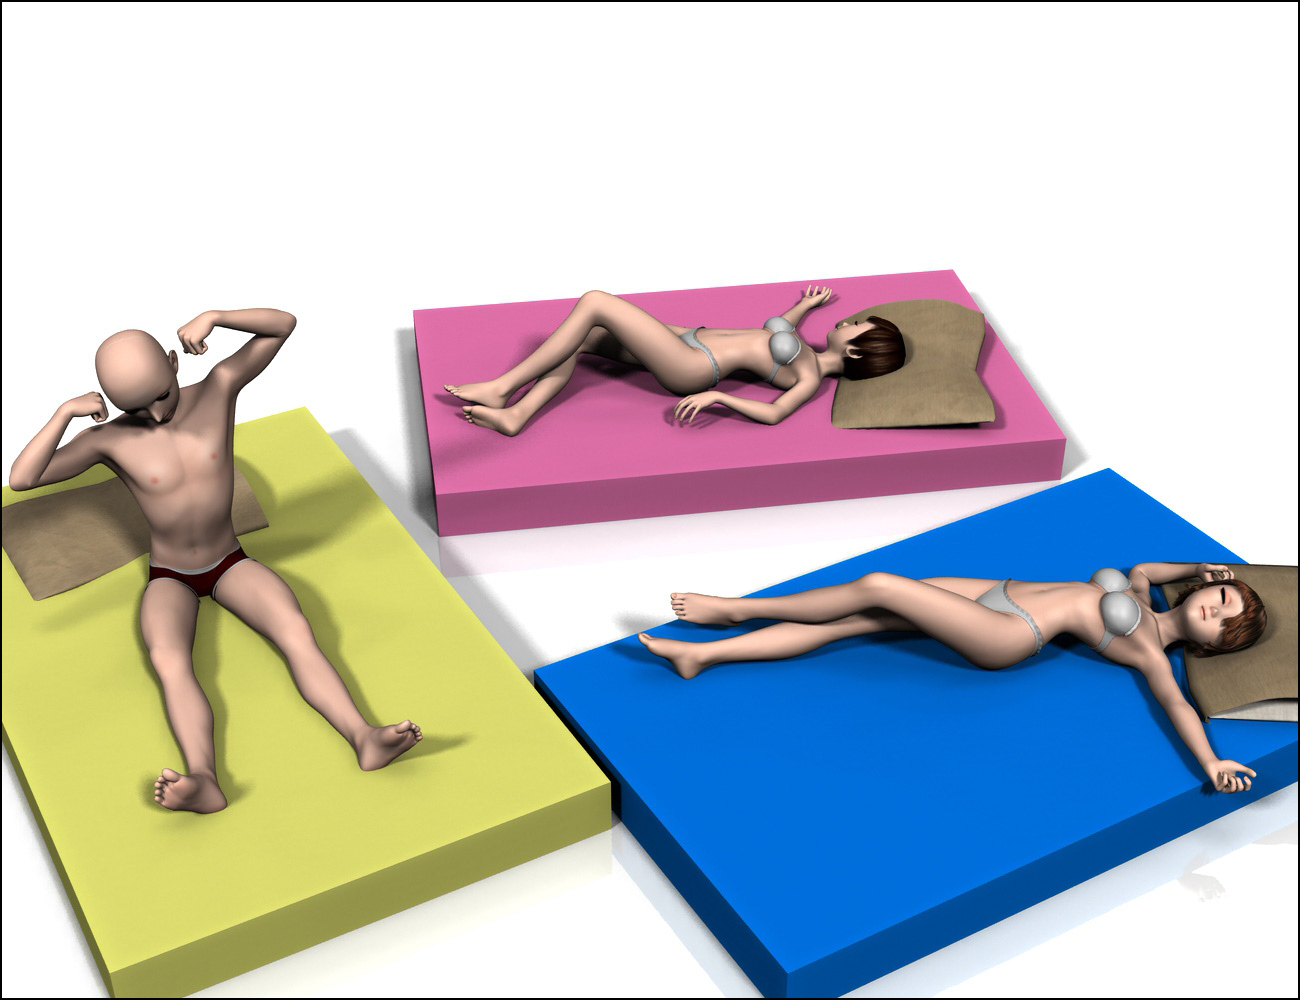 Relax & Sleep II by: MattymanxMuscleman, 3D Models by Daz 3D